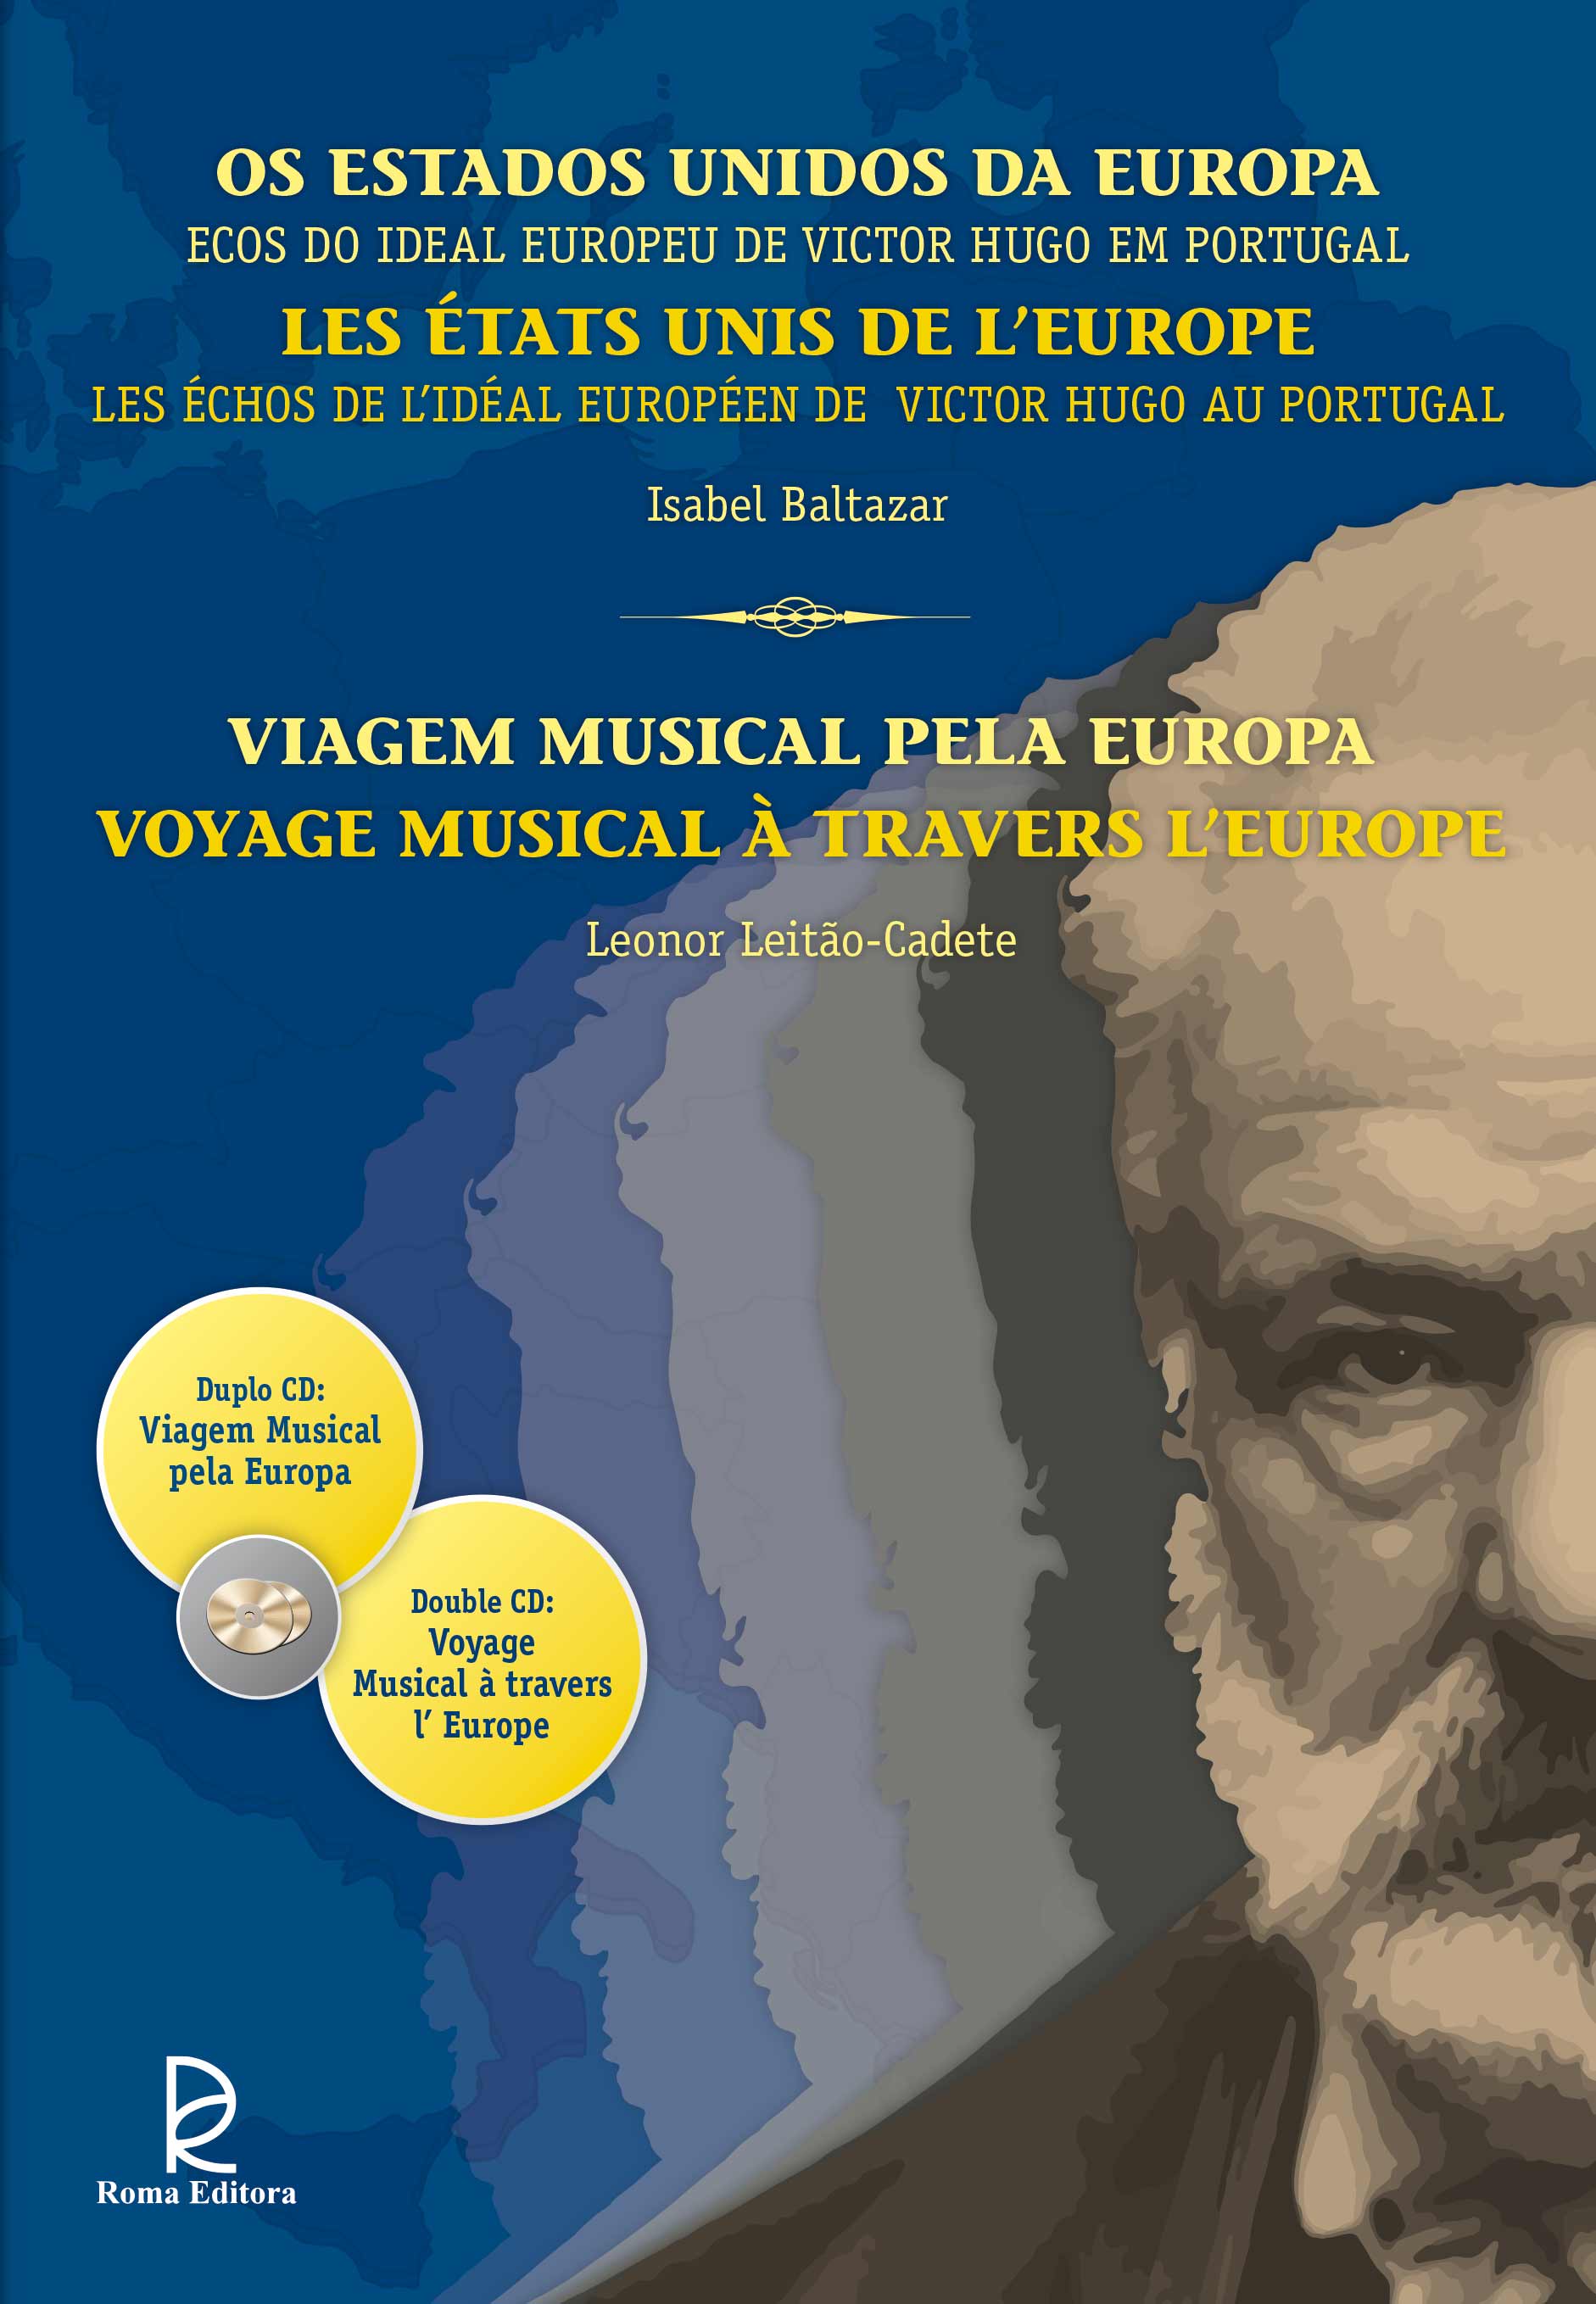 Os Estados Unidos da Europa - Ecos do ideal europeu de Victor Hugo em Portugal